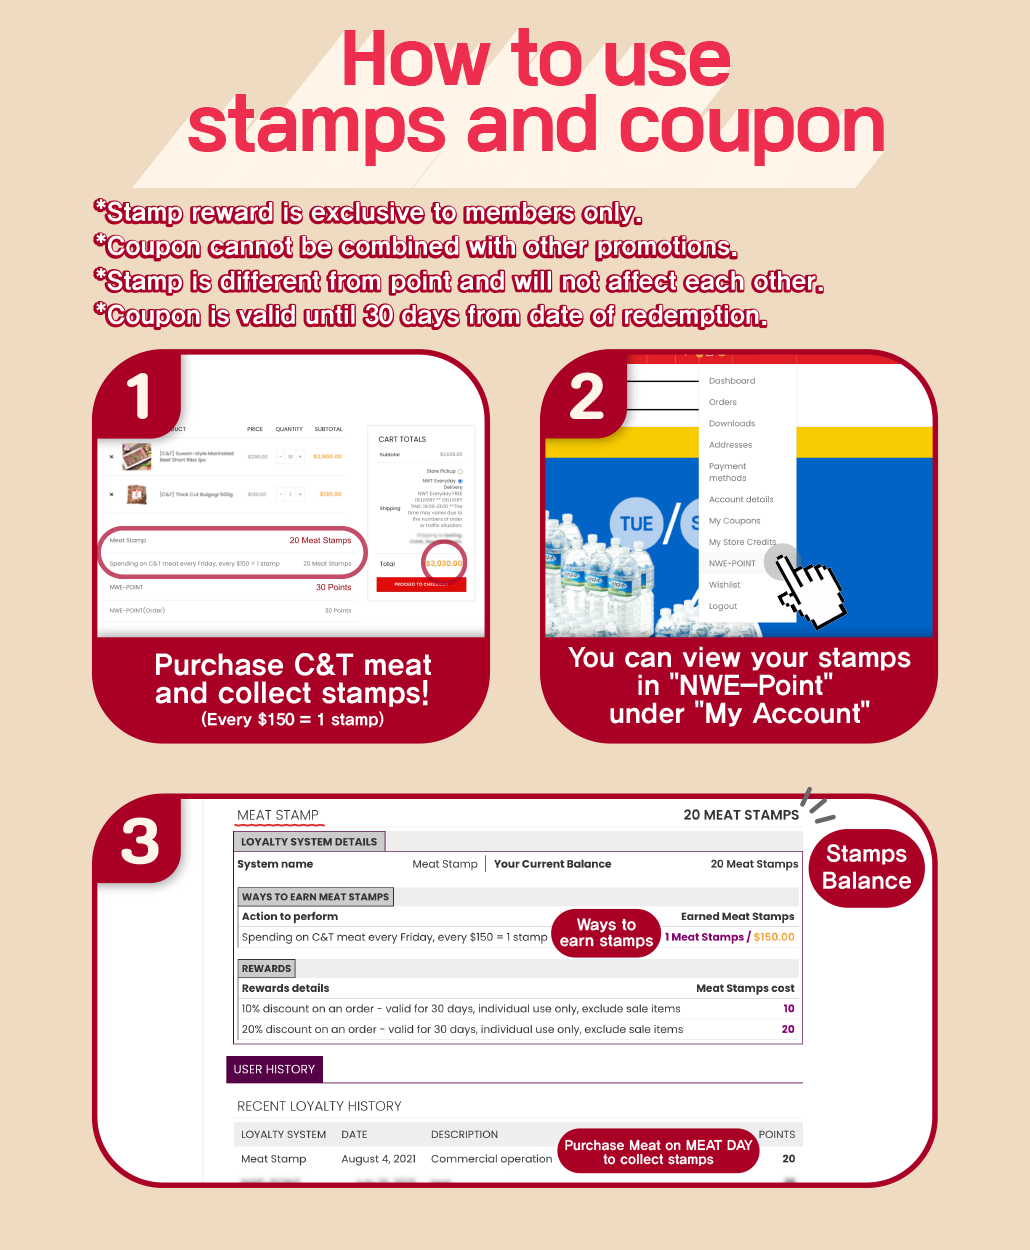 韓國食品-Every Friday is MEAT DAY! - Collect stamps upon spending on C&T meat every Friday and redeem your coupon!